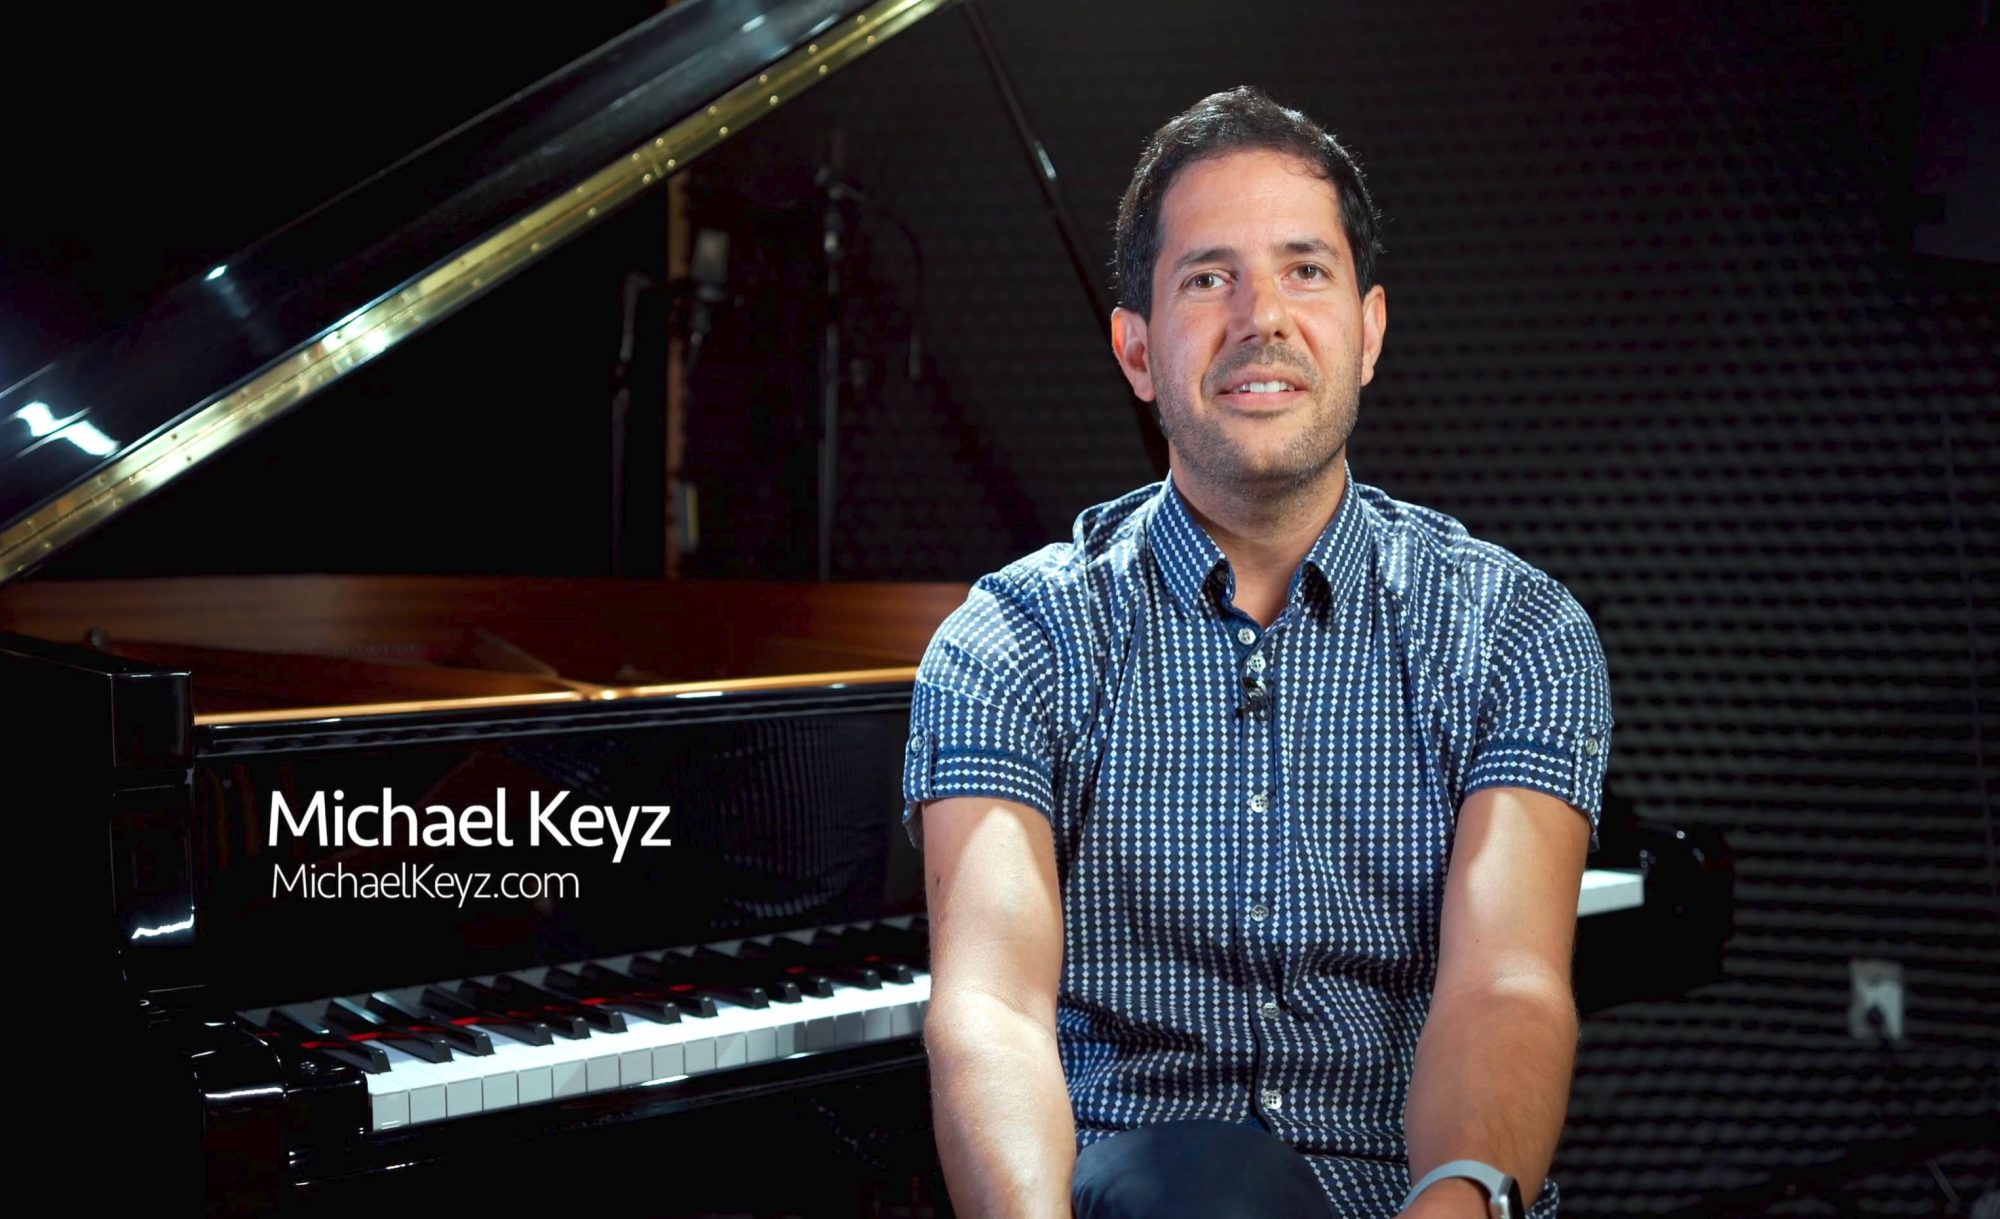 Photo of Michael Keyz at the piano